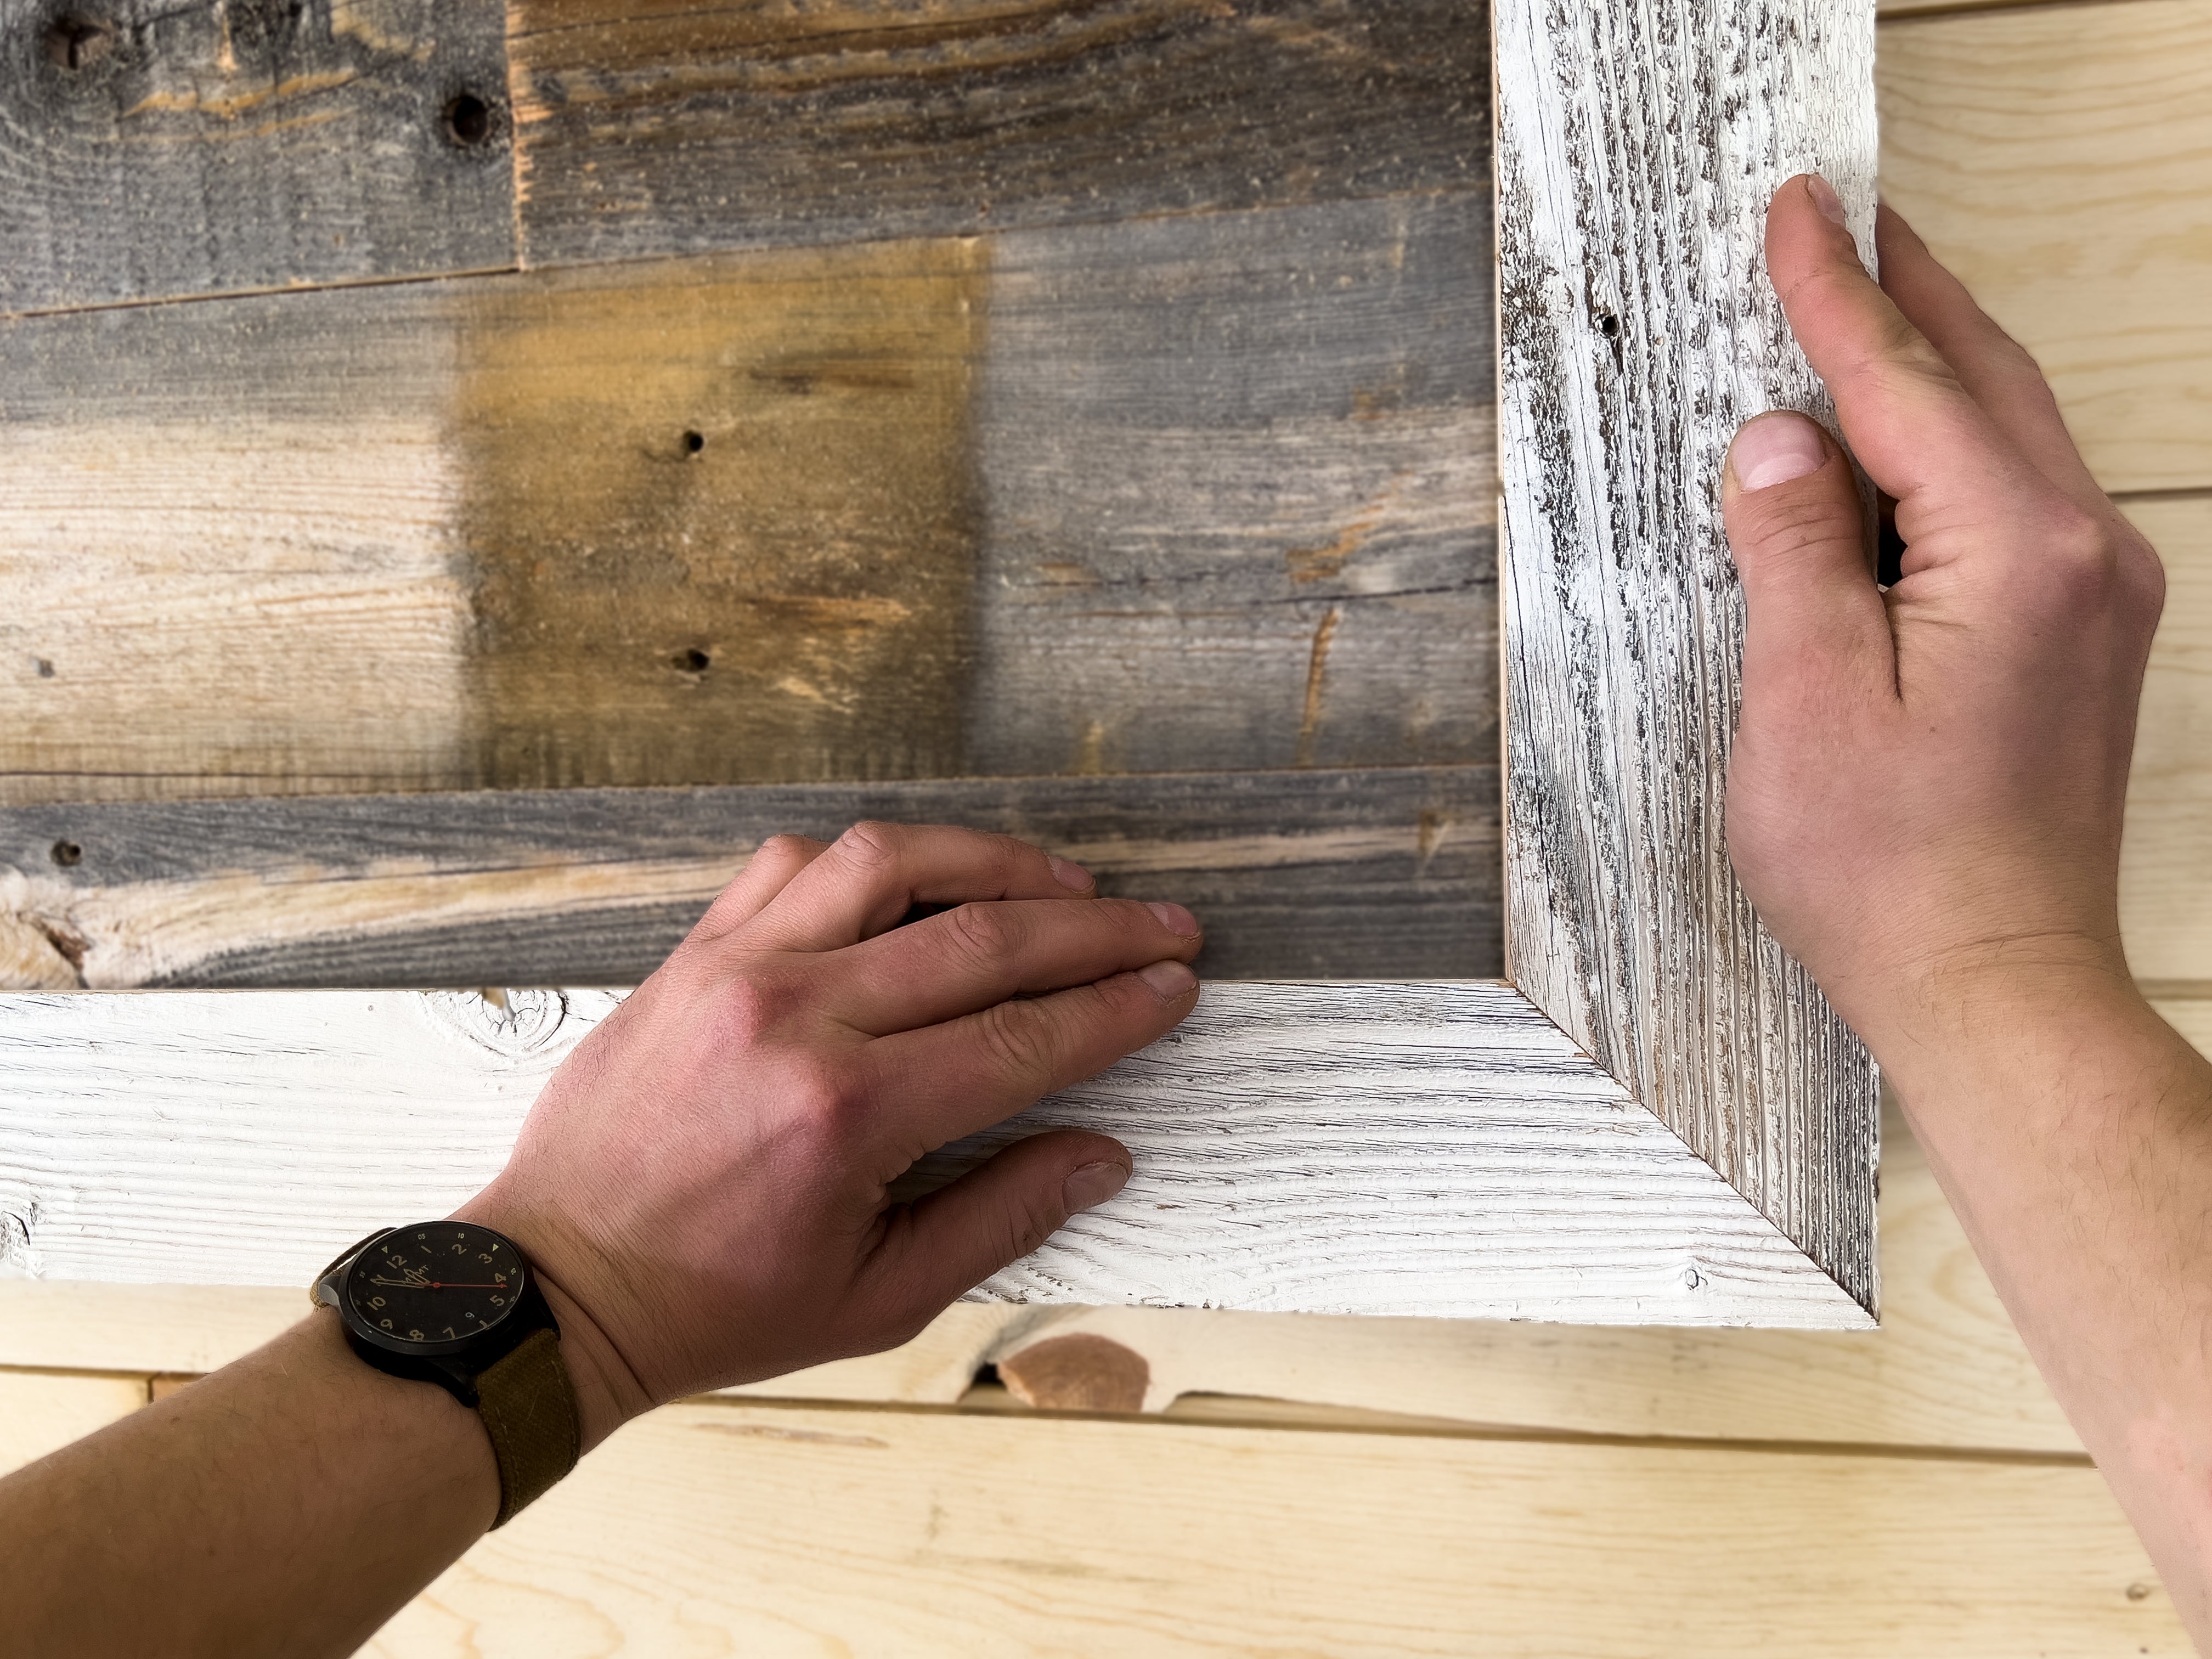 Standard Size 1x12 White Oak Boards - $22.50/ft – American Wood Moldings